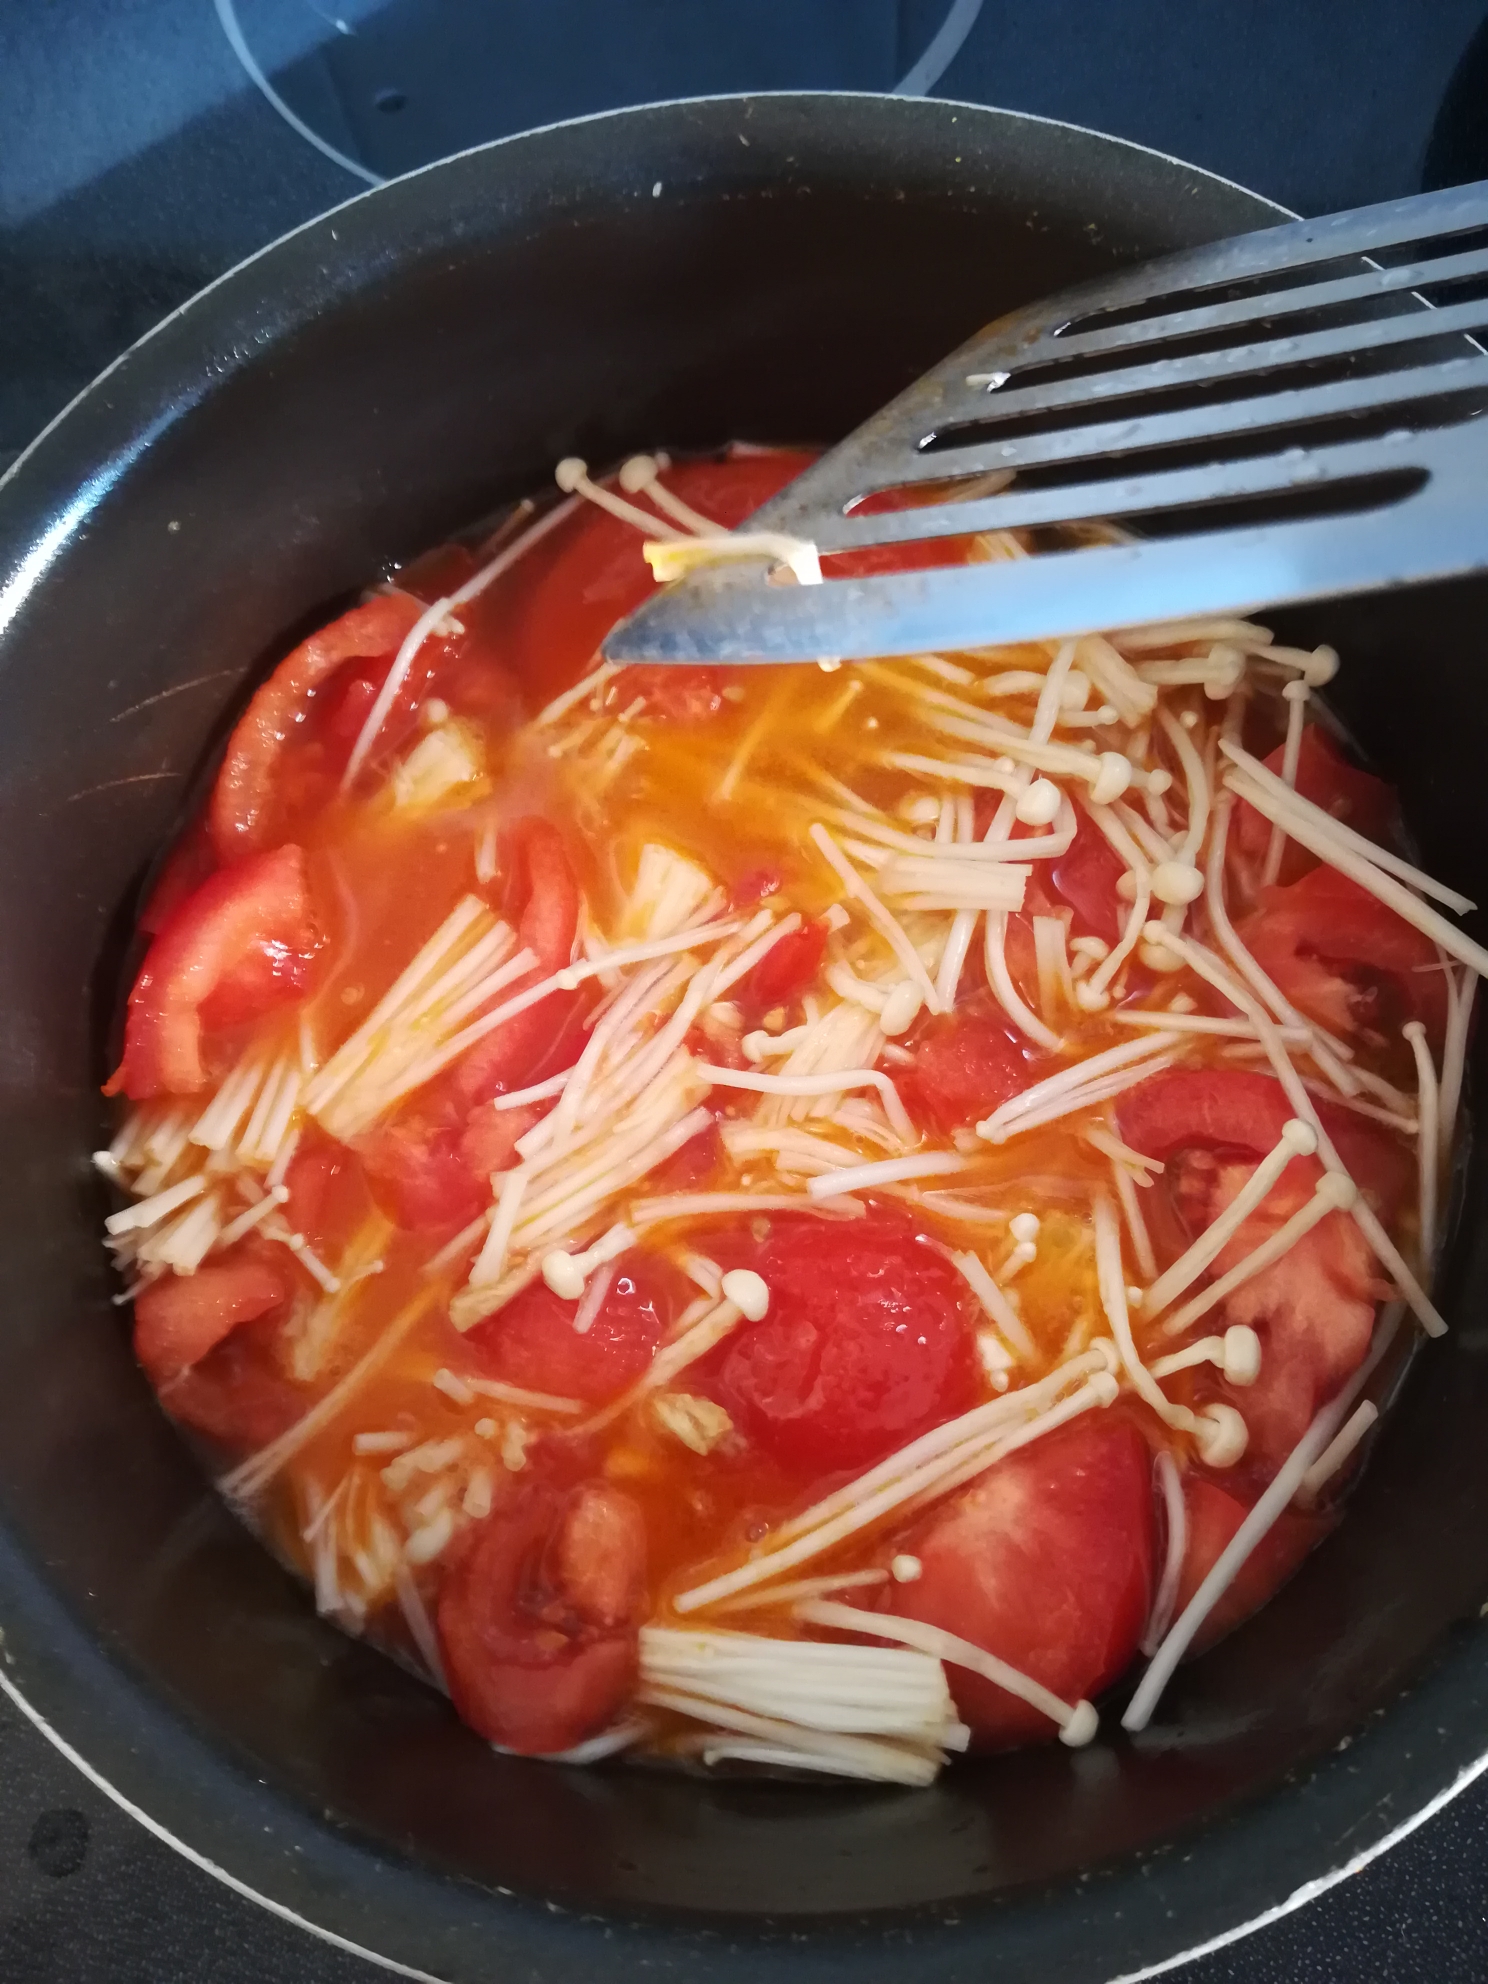 西红柿金针菇豆腐汤